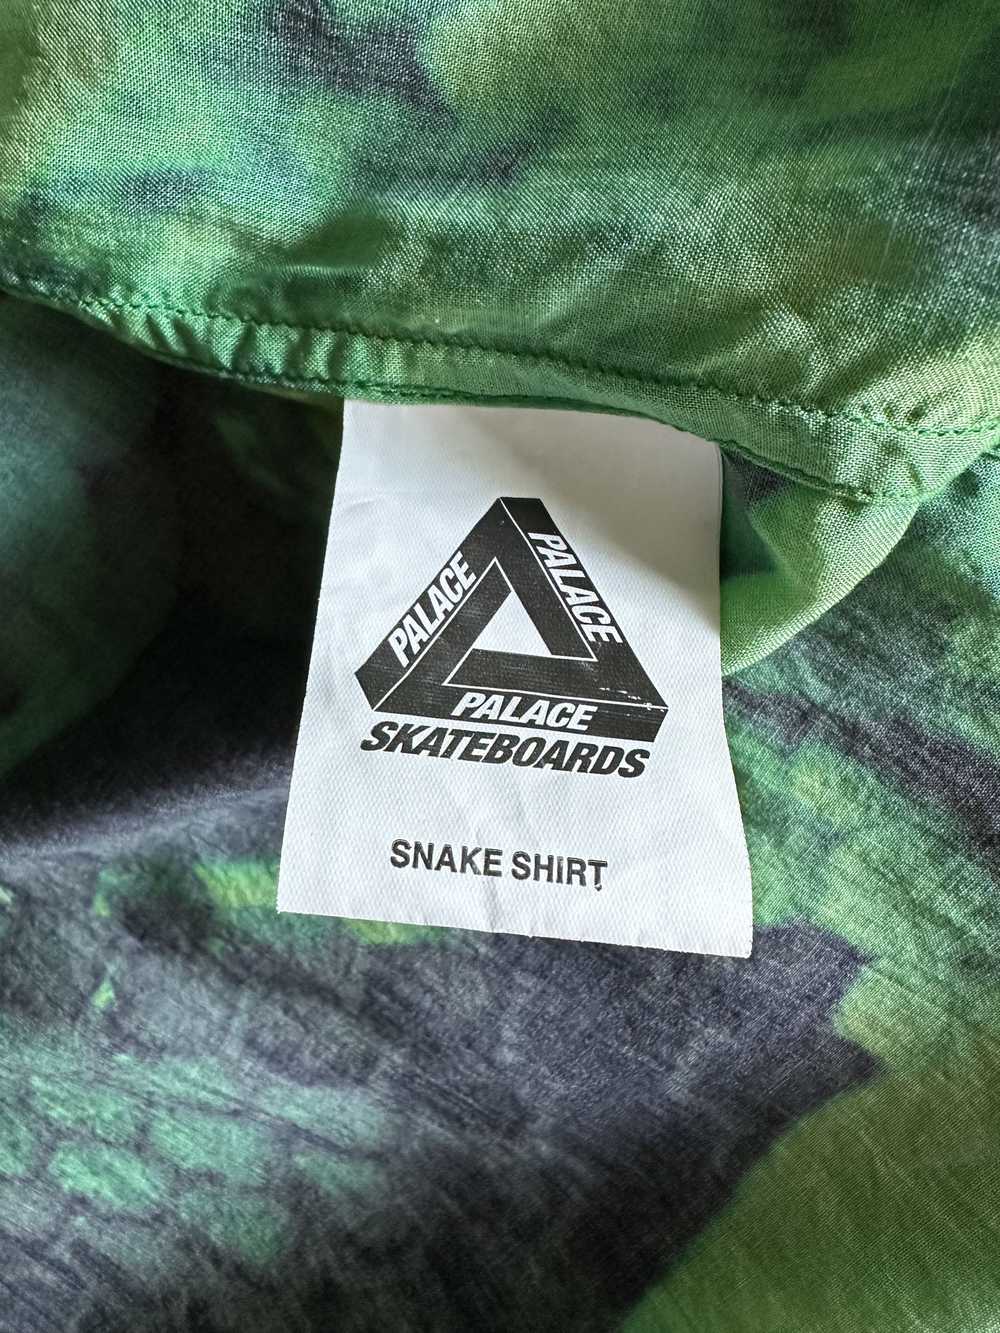 Palace Snake Shirt - image 4